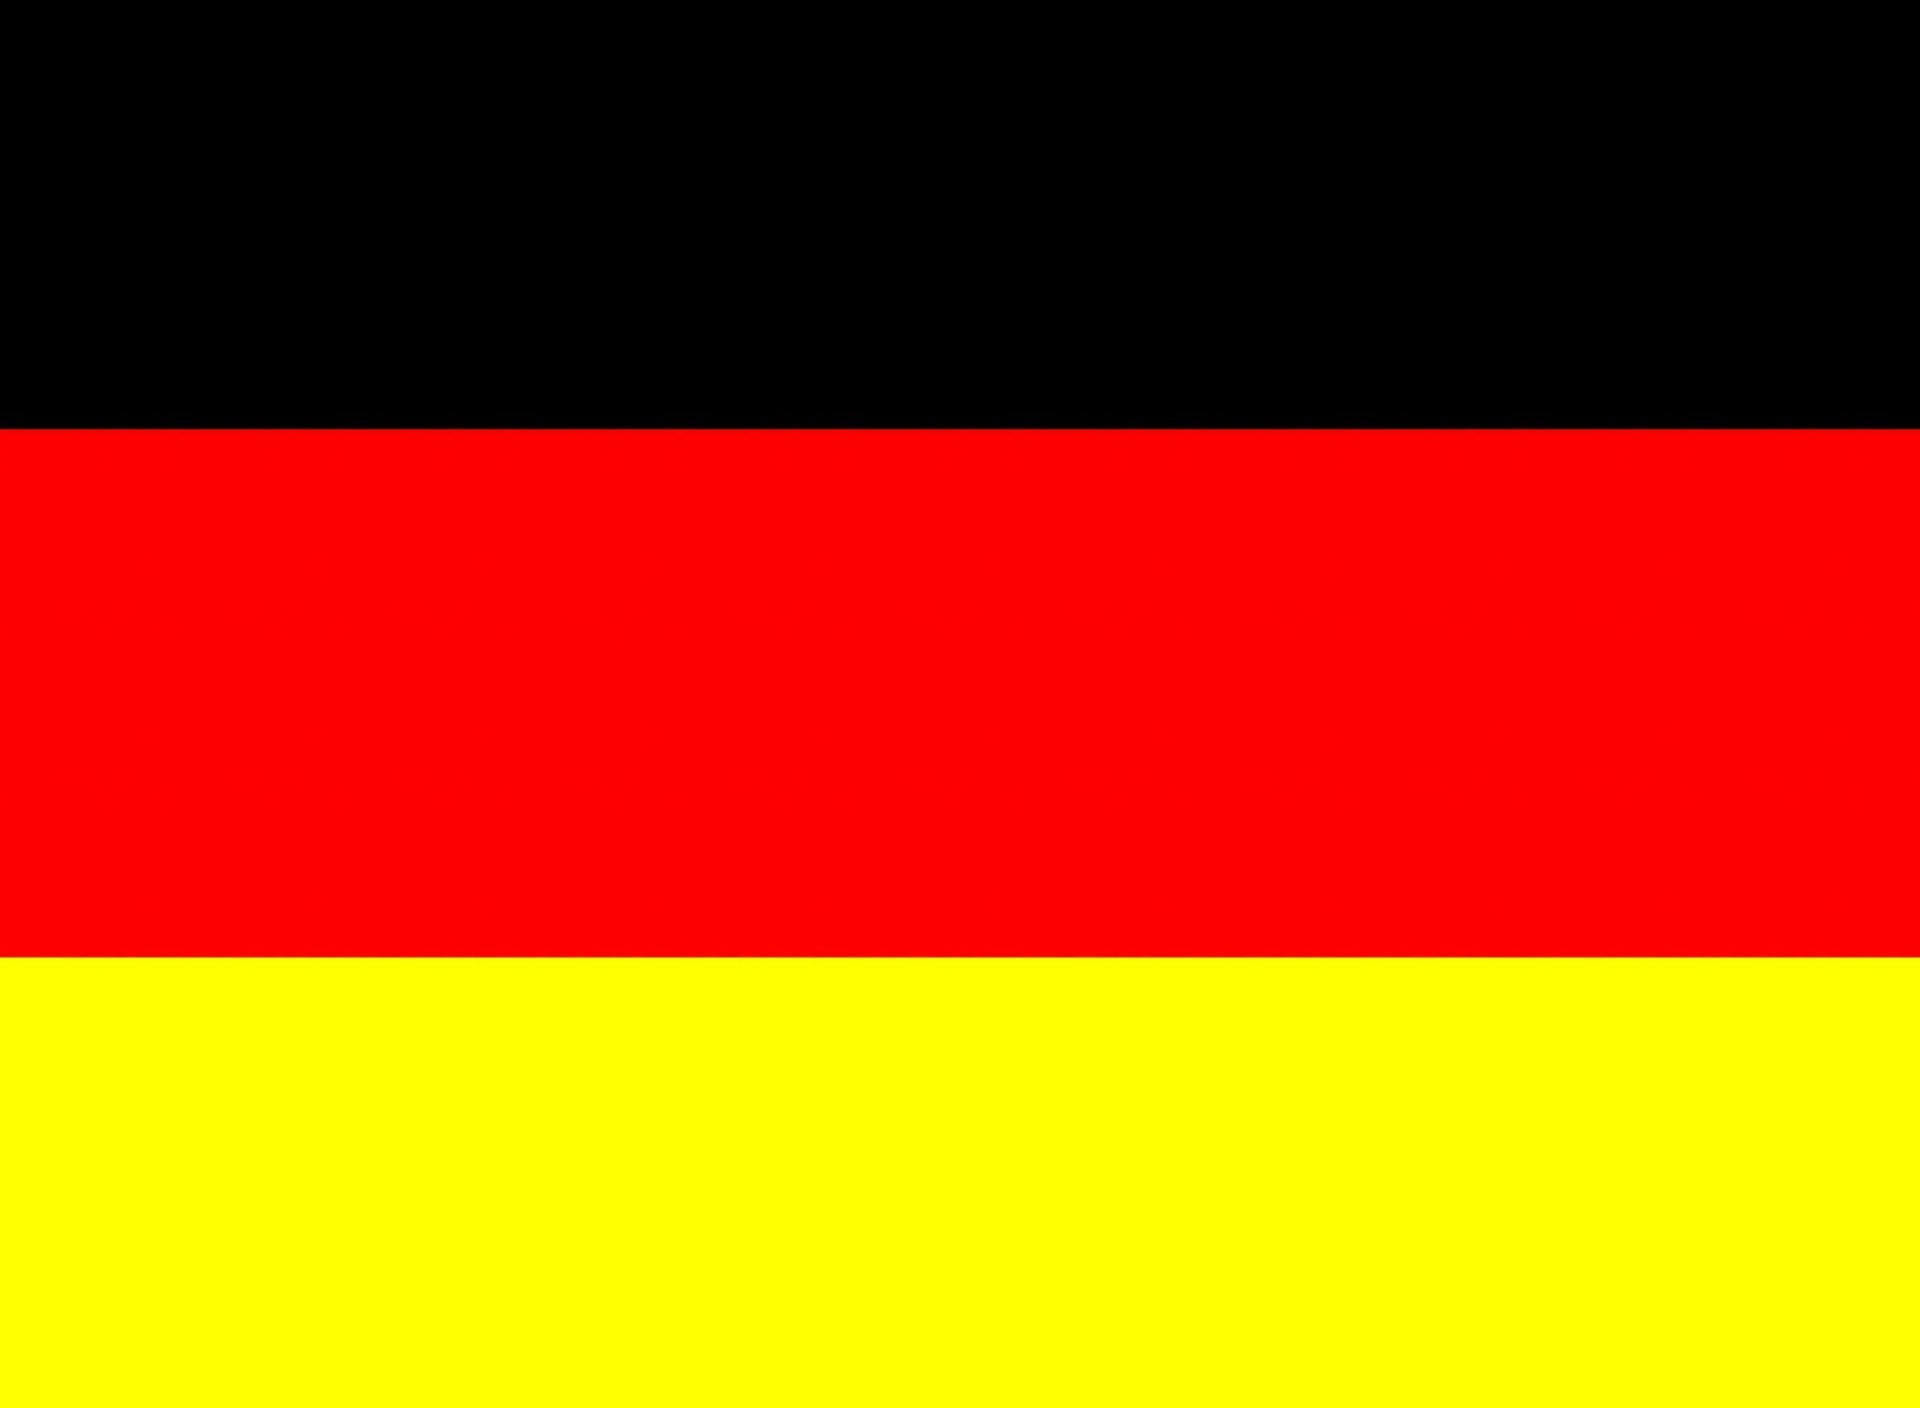 Das Germany Flag Wallpaper 1920x1408